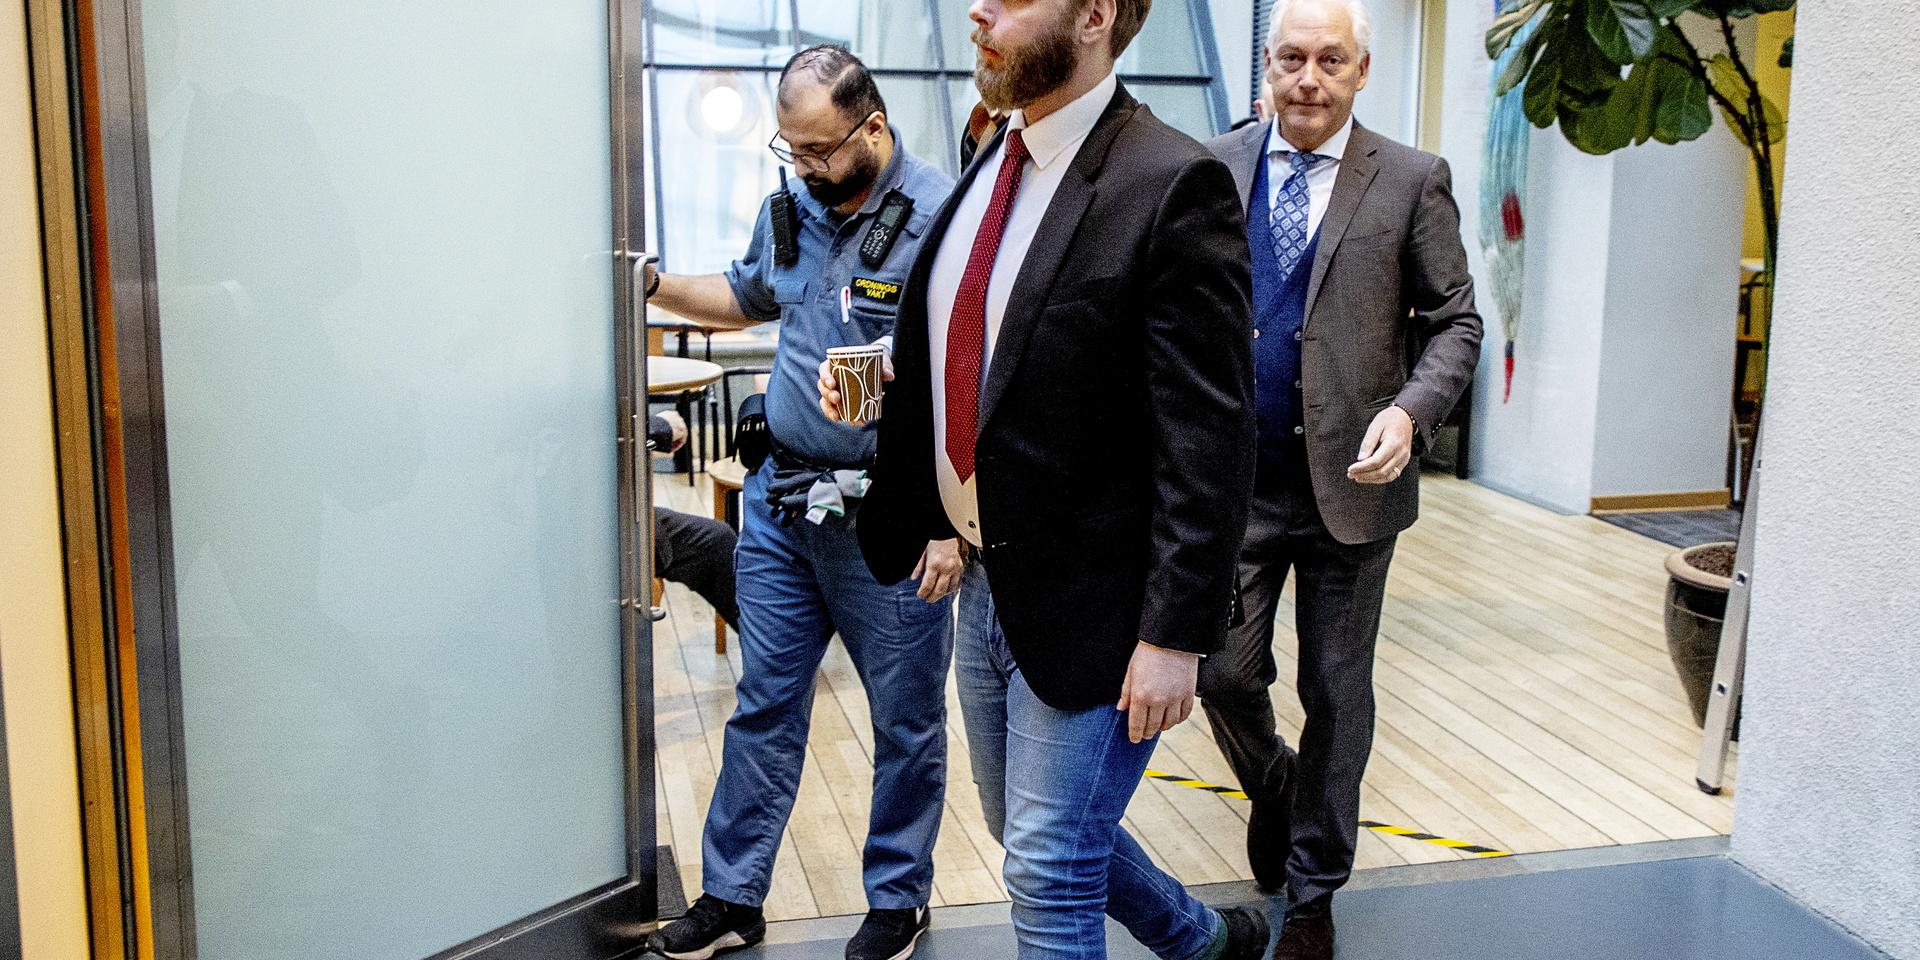 Journalisten Henrik Evertsson på väg in till hovrättens rättegång i januari om dykningarna vid Estonia. Till höger ses advokat Johan Eriksson, som försvarar Evertsson. Nu har hovrätten bestämt att målet ska prövas igen av tingsrätten.